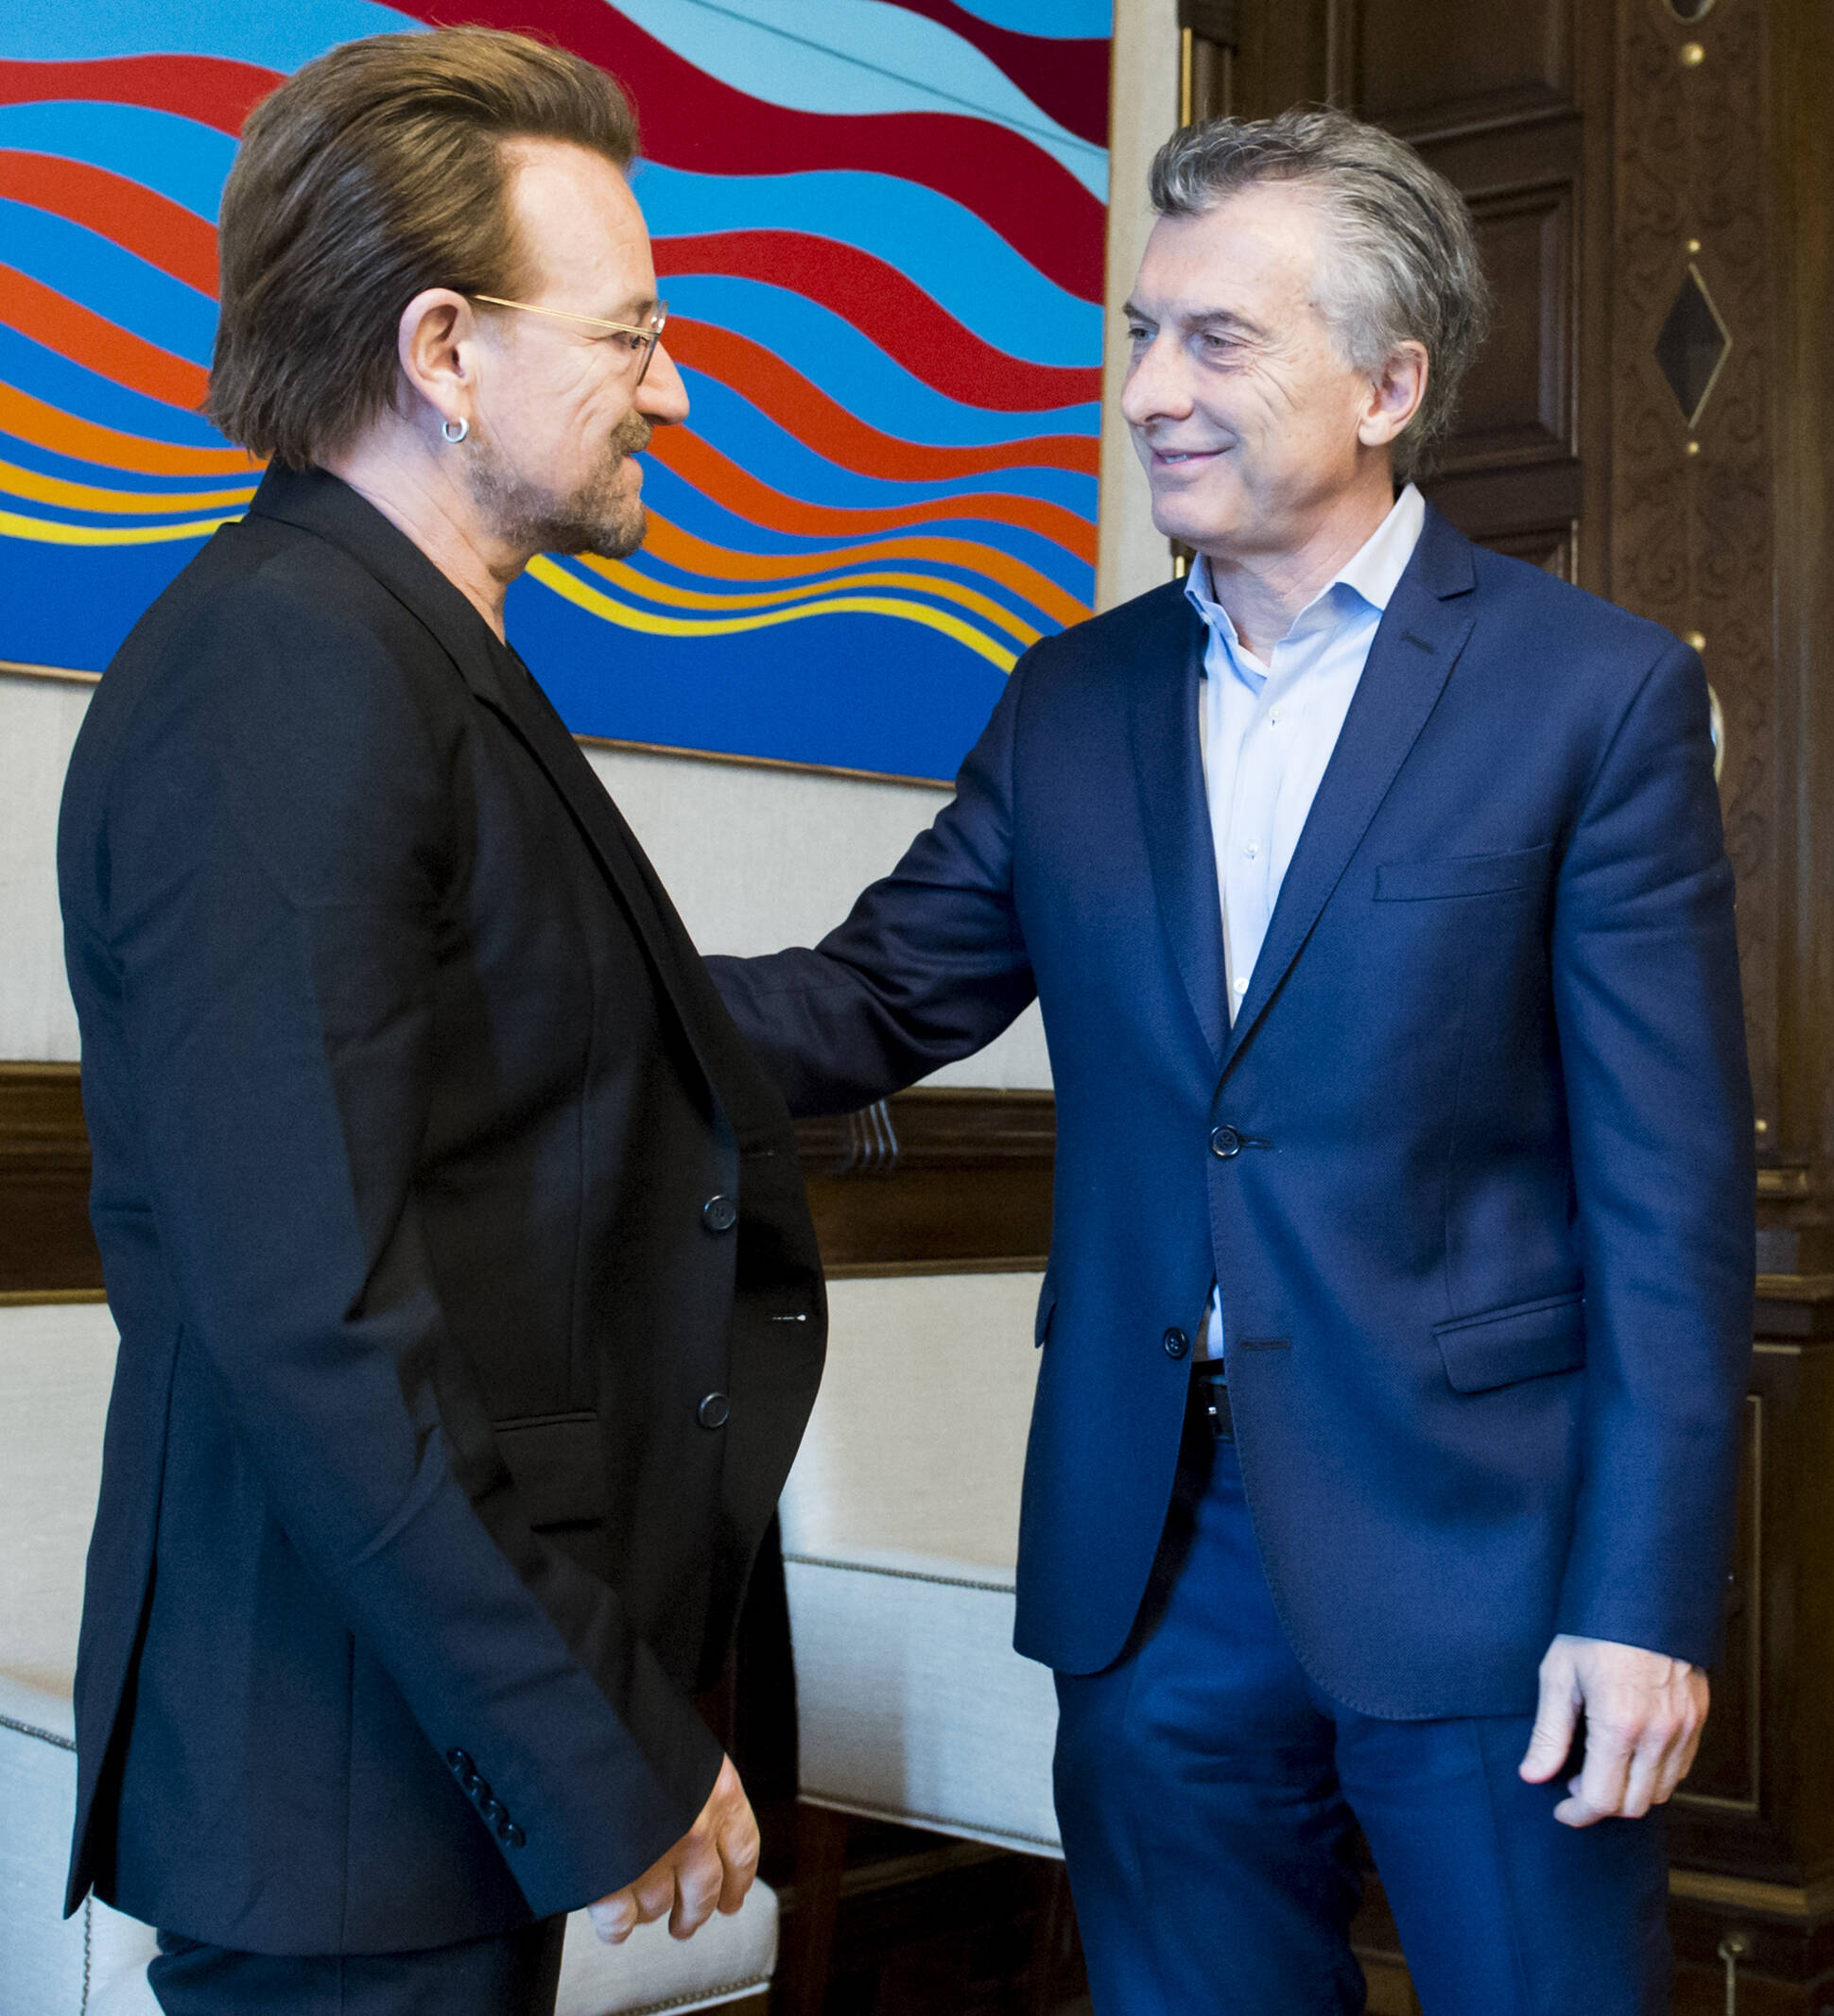 El Presidente recibió a Bono, el líder de la banda U2